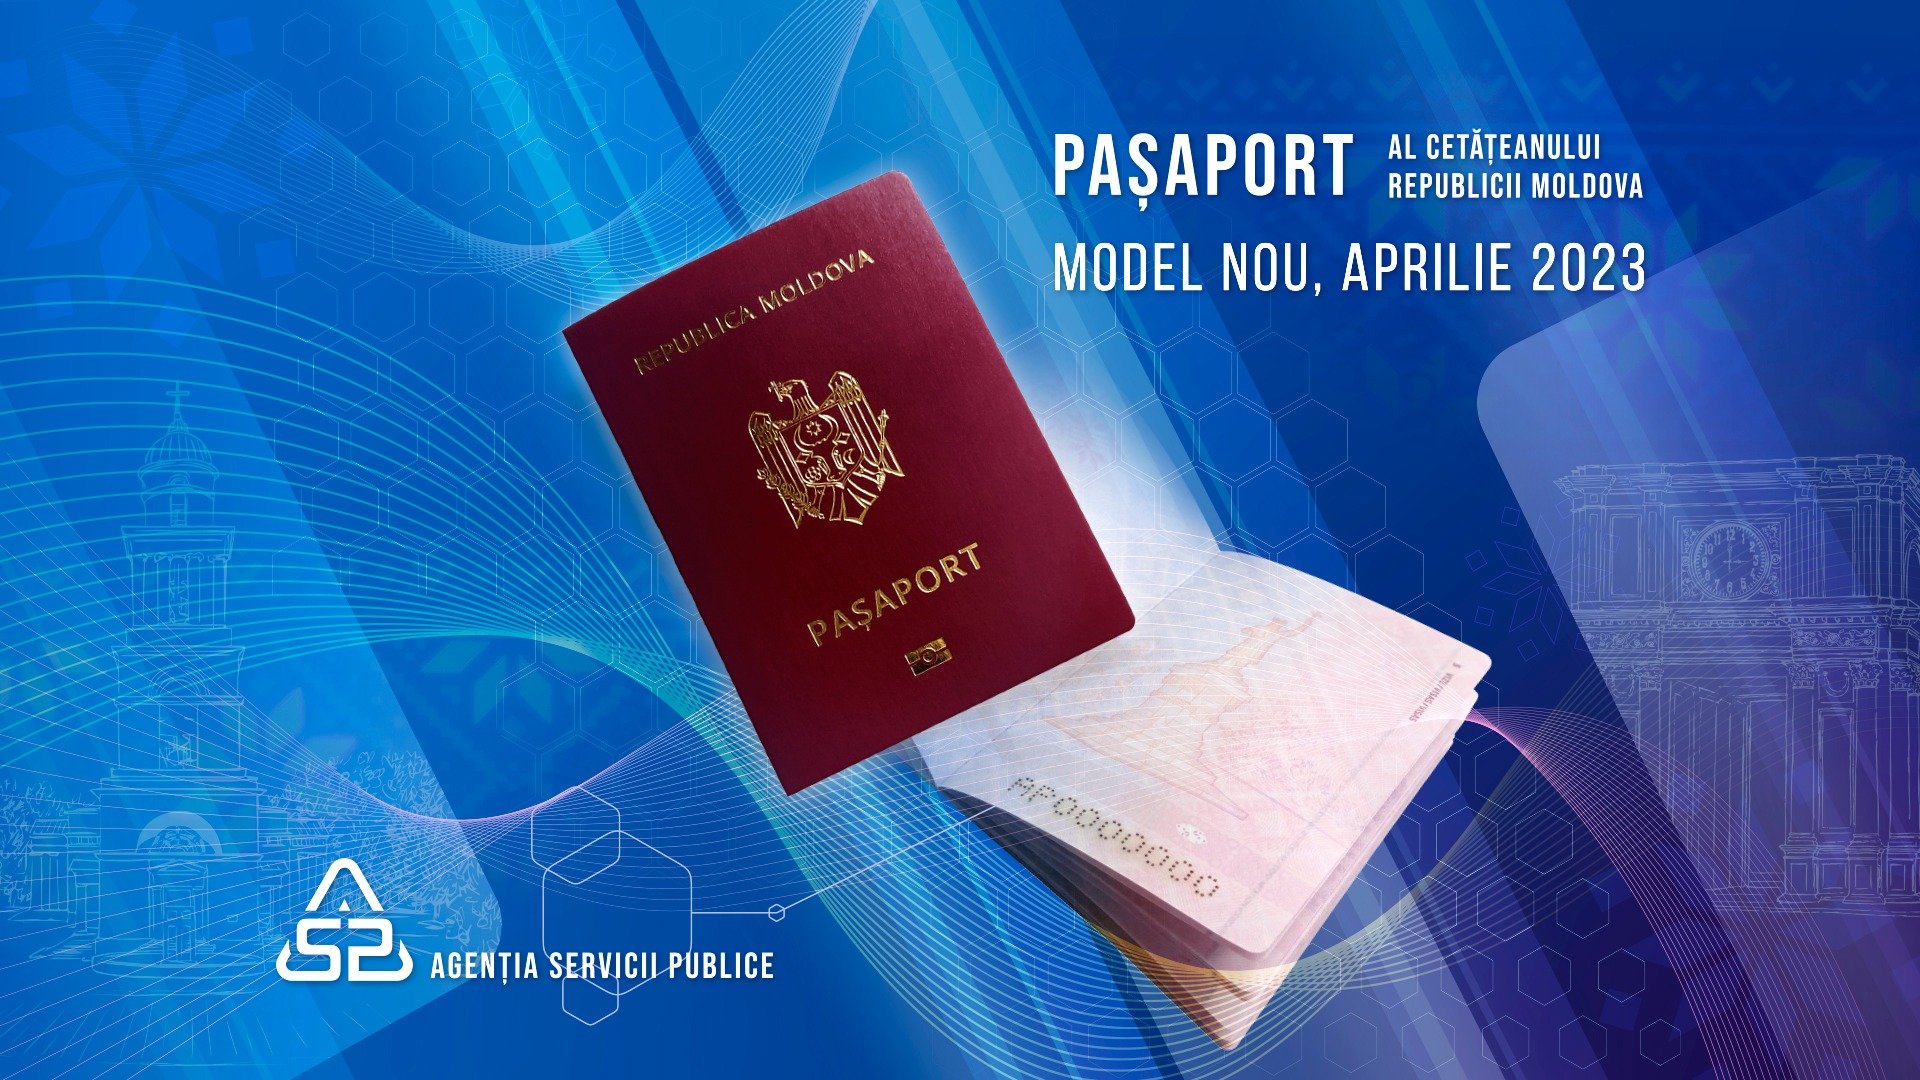  Un nou model de paşaport în Republica Moldova, începând cu luna aprilie